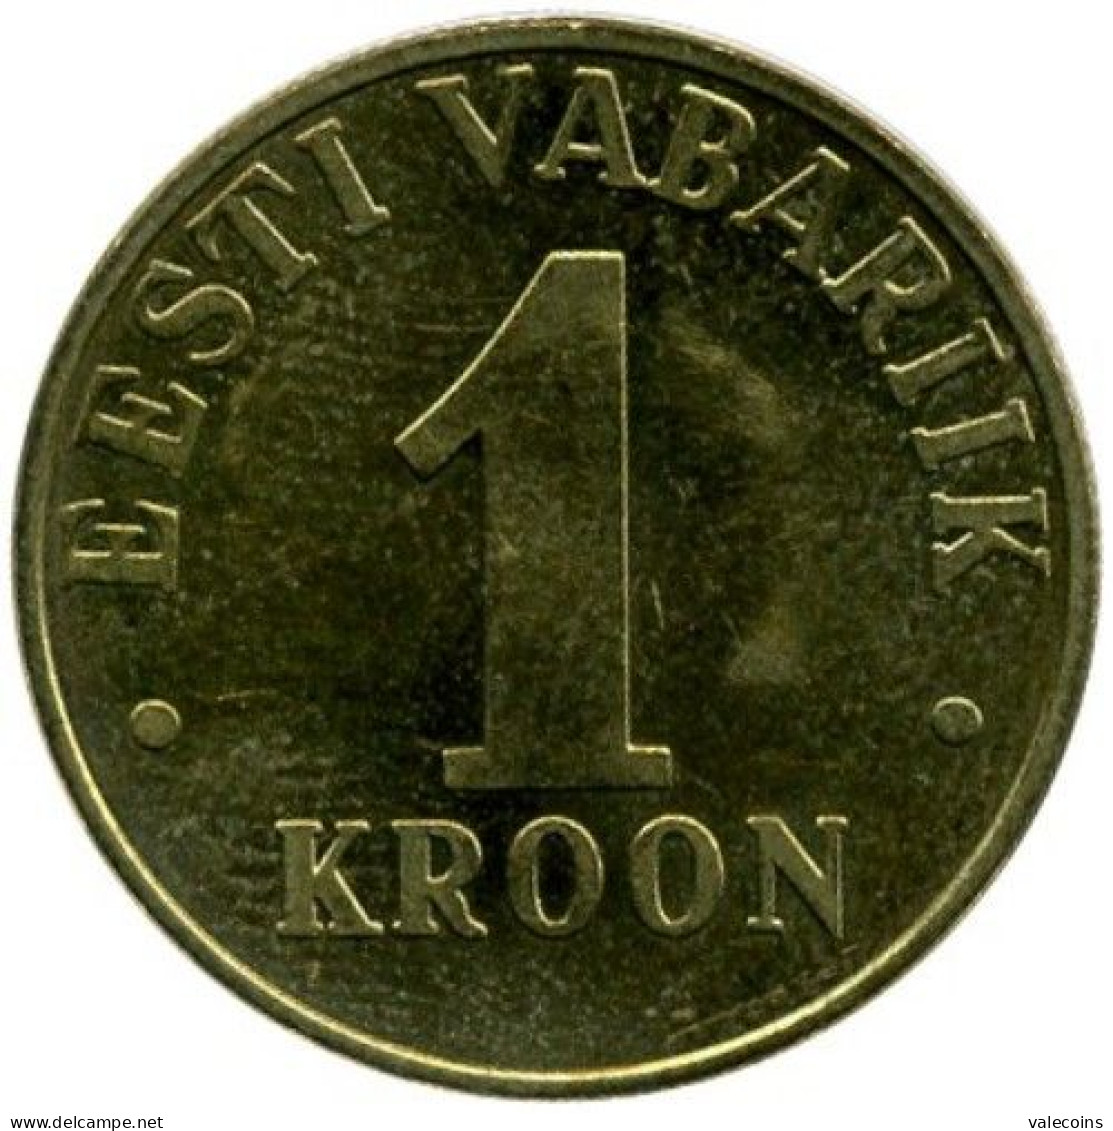 ESTONIA EESTI - 2001 - 1 Kroon - KM  35 - UNC - Estonia